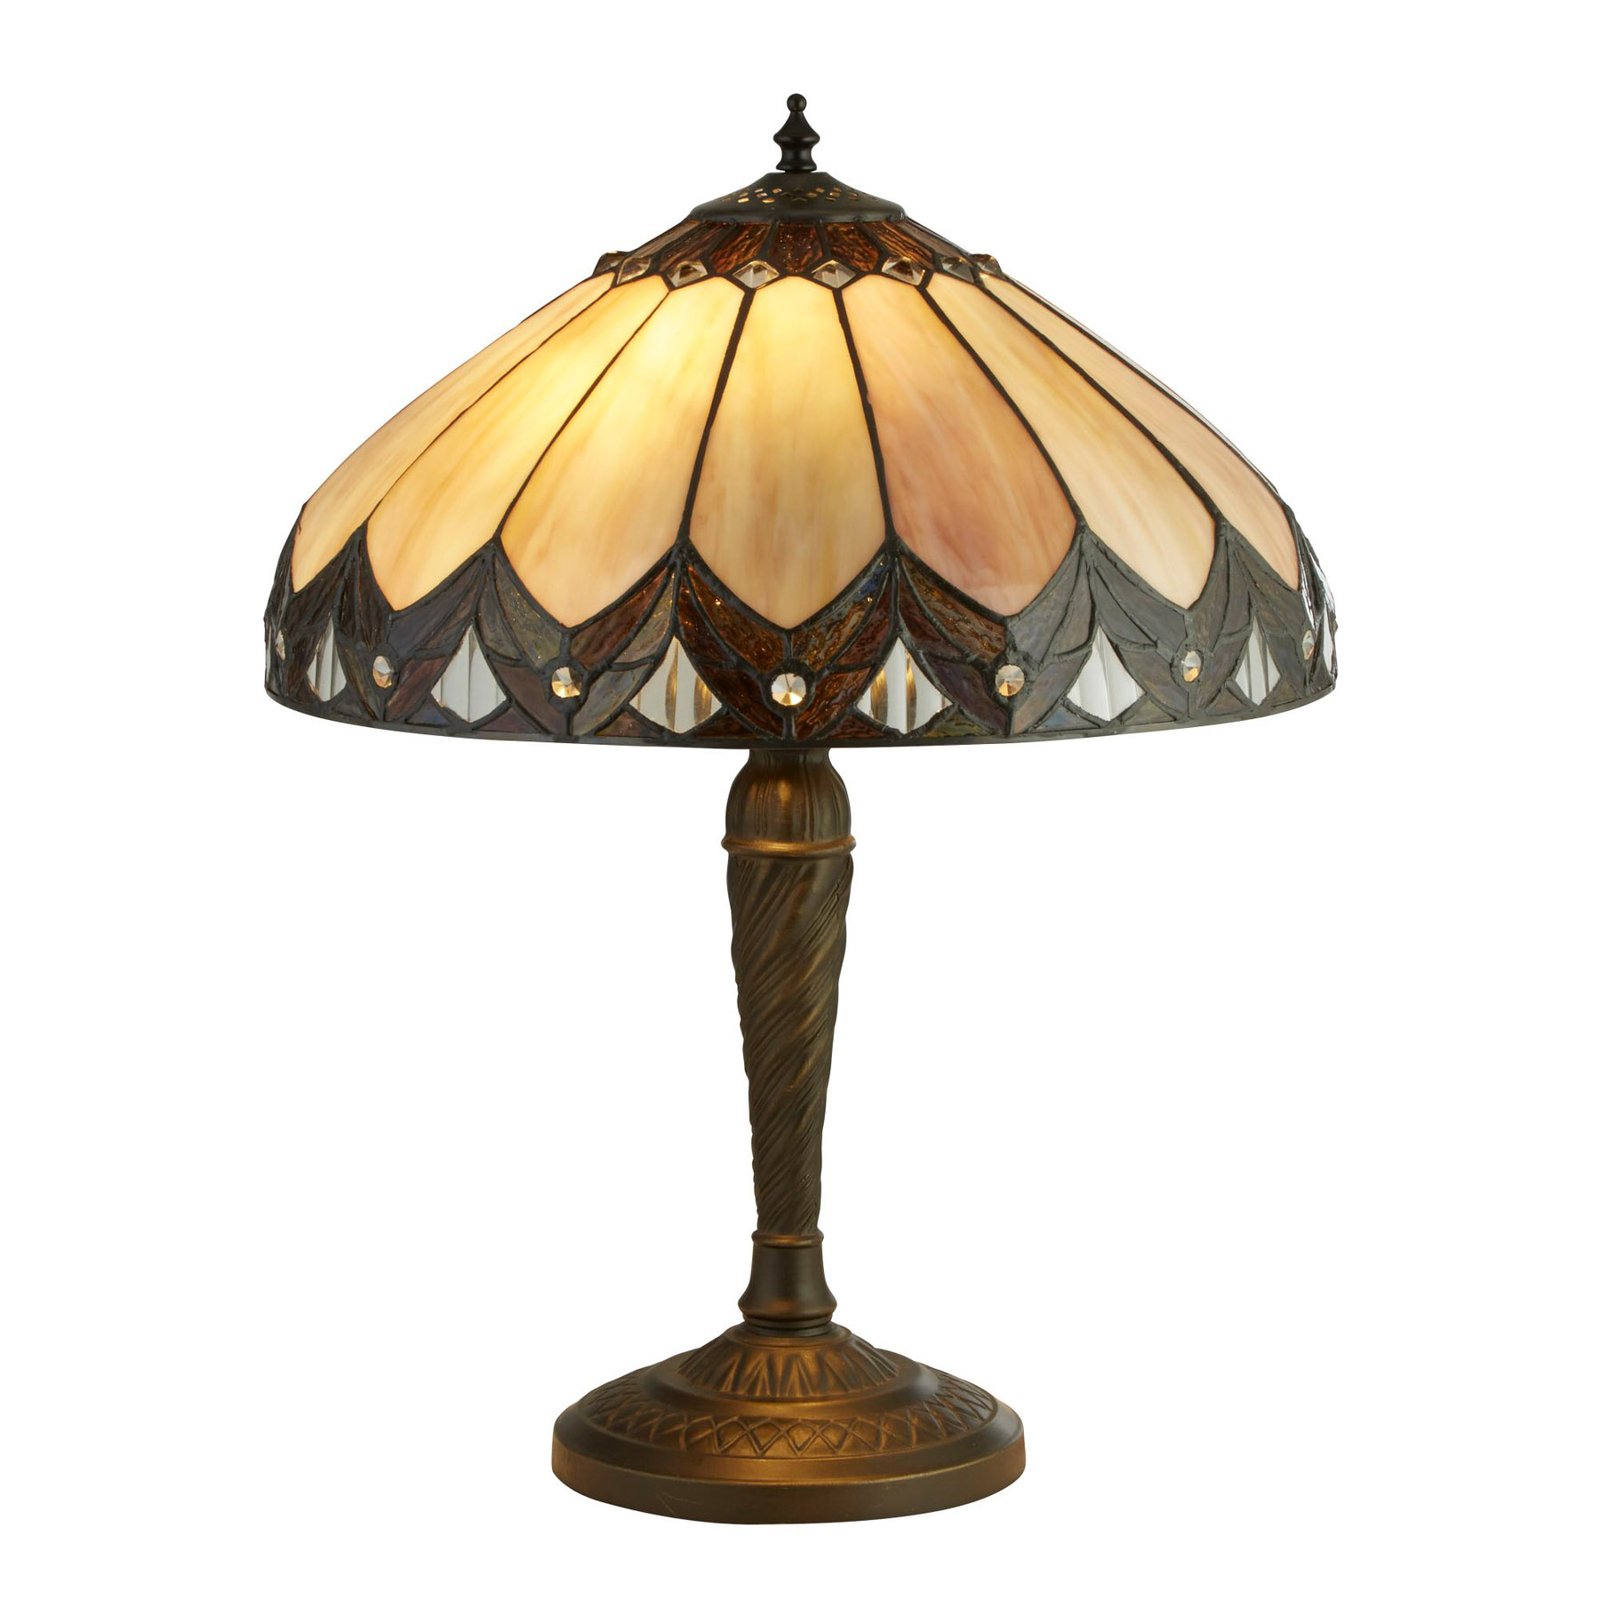 Pearl-pöytälamppu tiffany-tyyliä, korkeus 53 cm